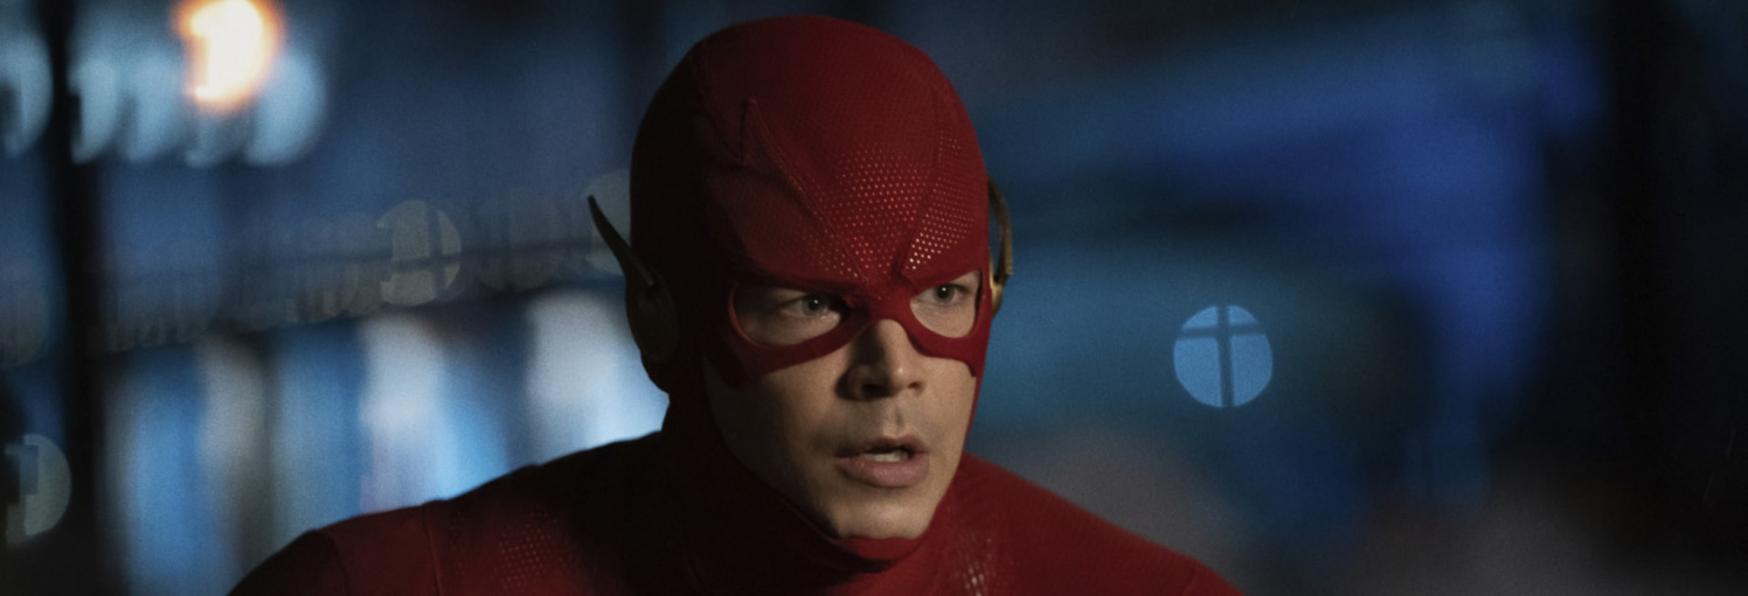 The Flash: pubblicato il Video Promozionale dell'Episodio 8x06